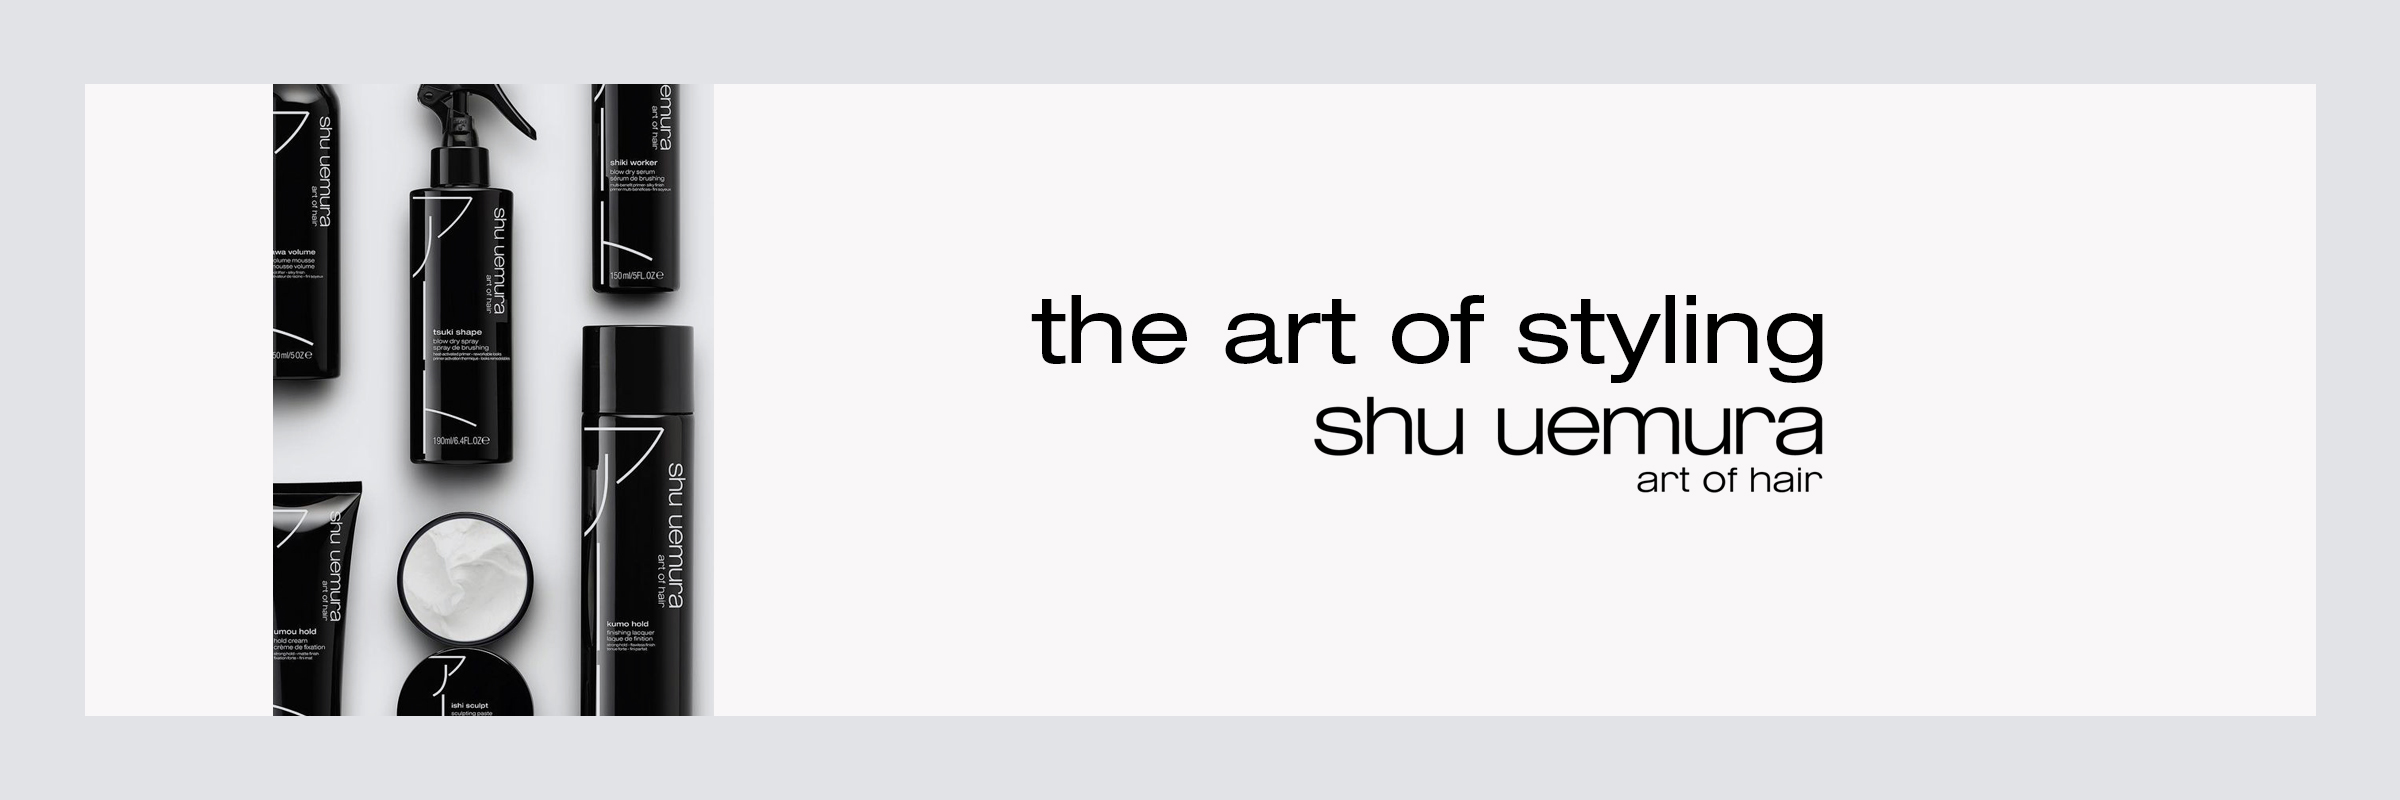 Shu Uemura The Art of Styling